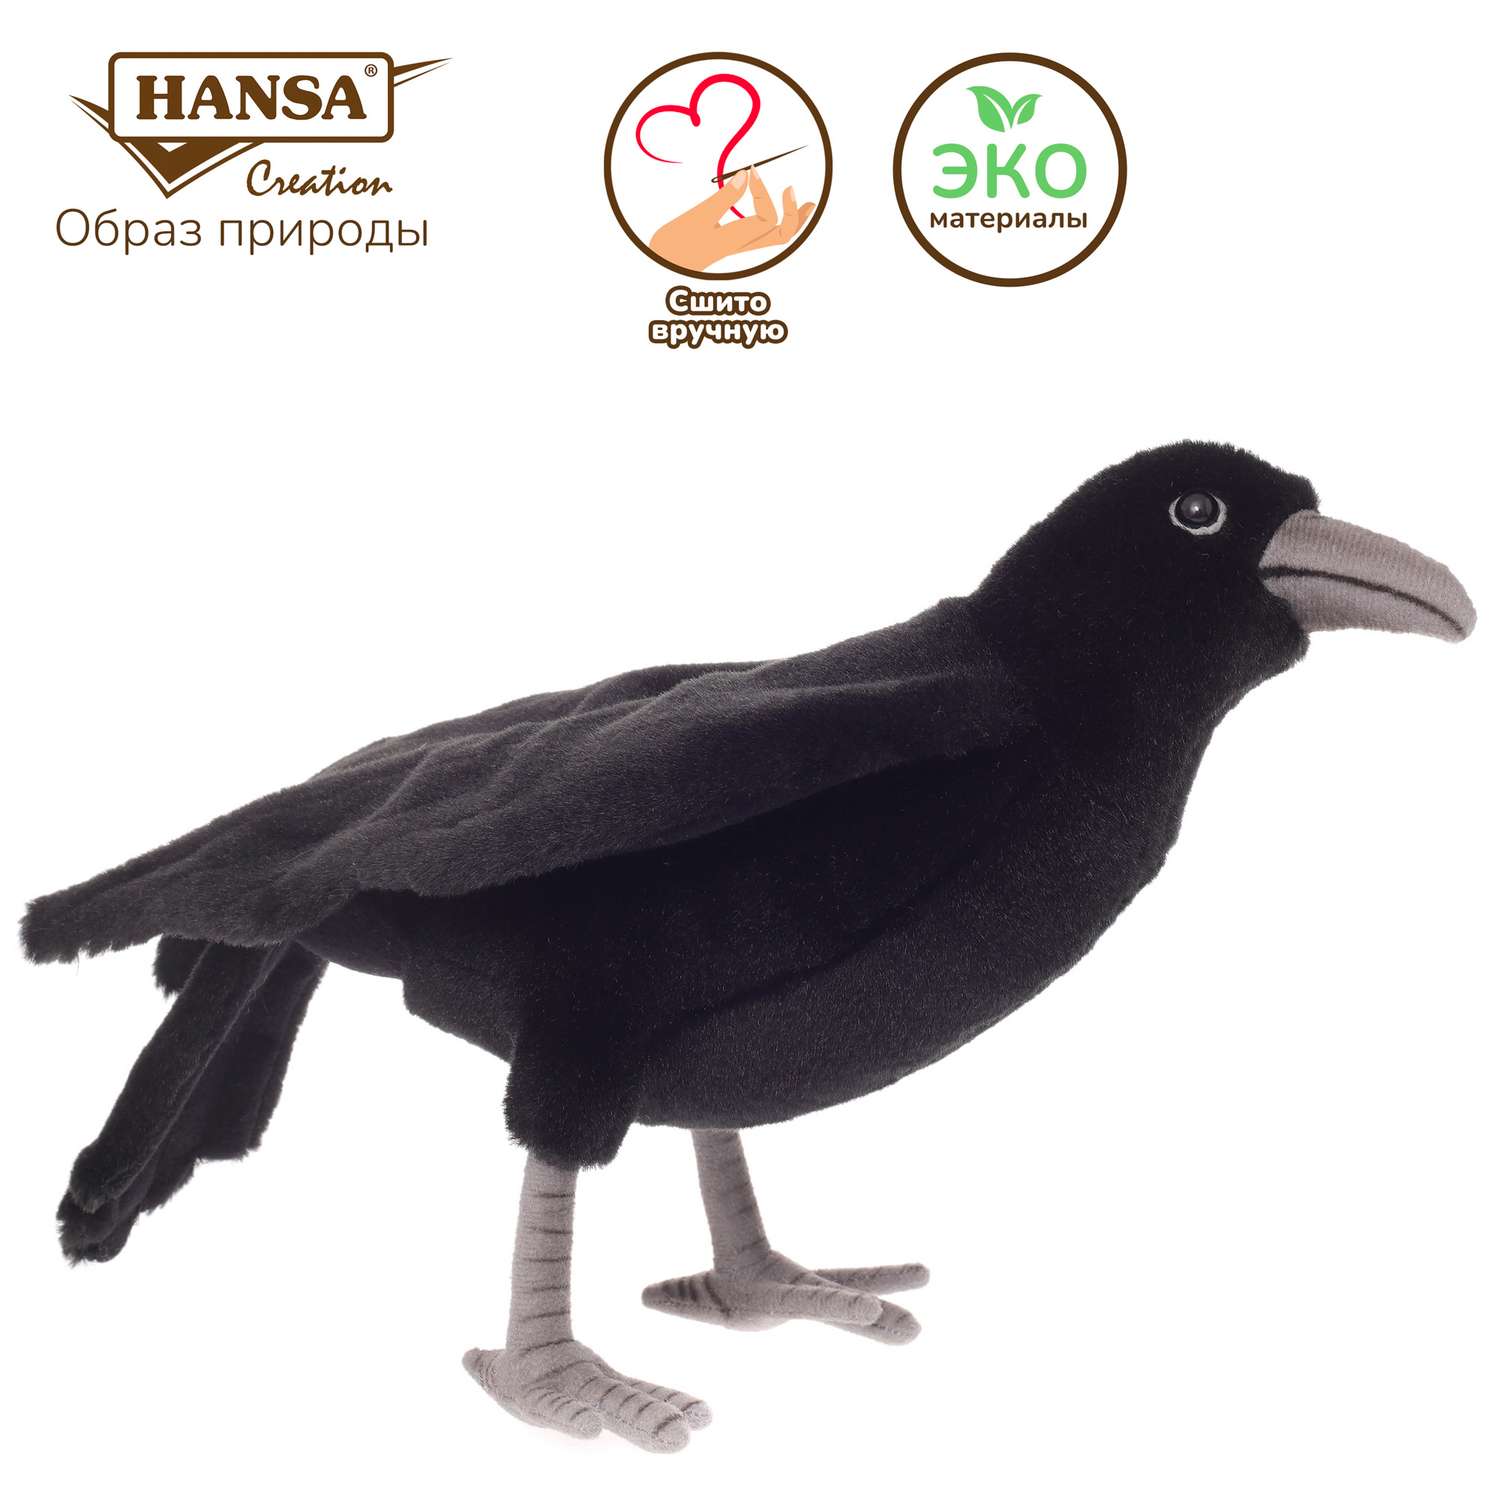 Реалистичная игрушка HANSA Черный ворон 31 см - фото 1